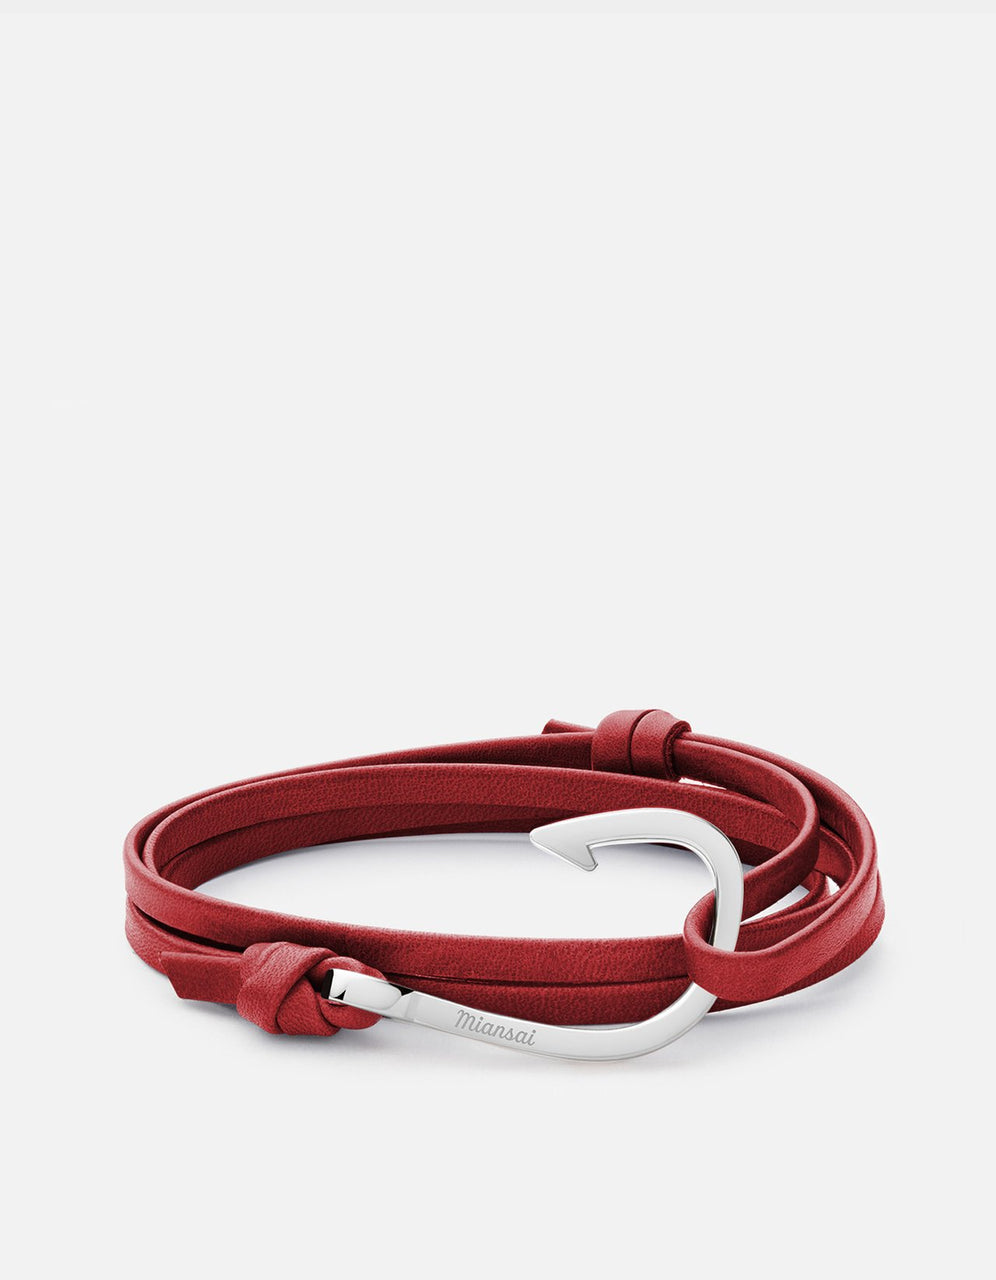 Hook on Leather Bracelet, Polished Silver, Red